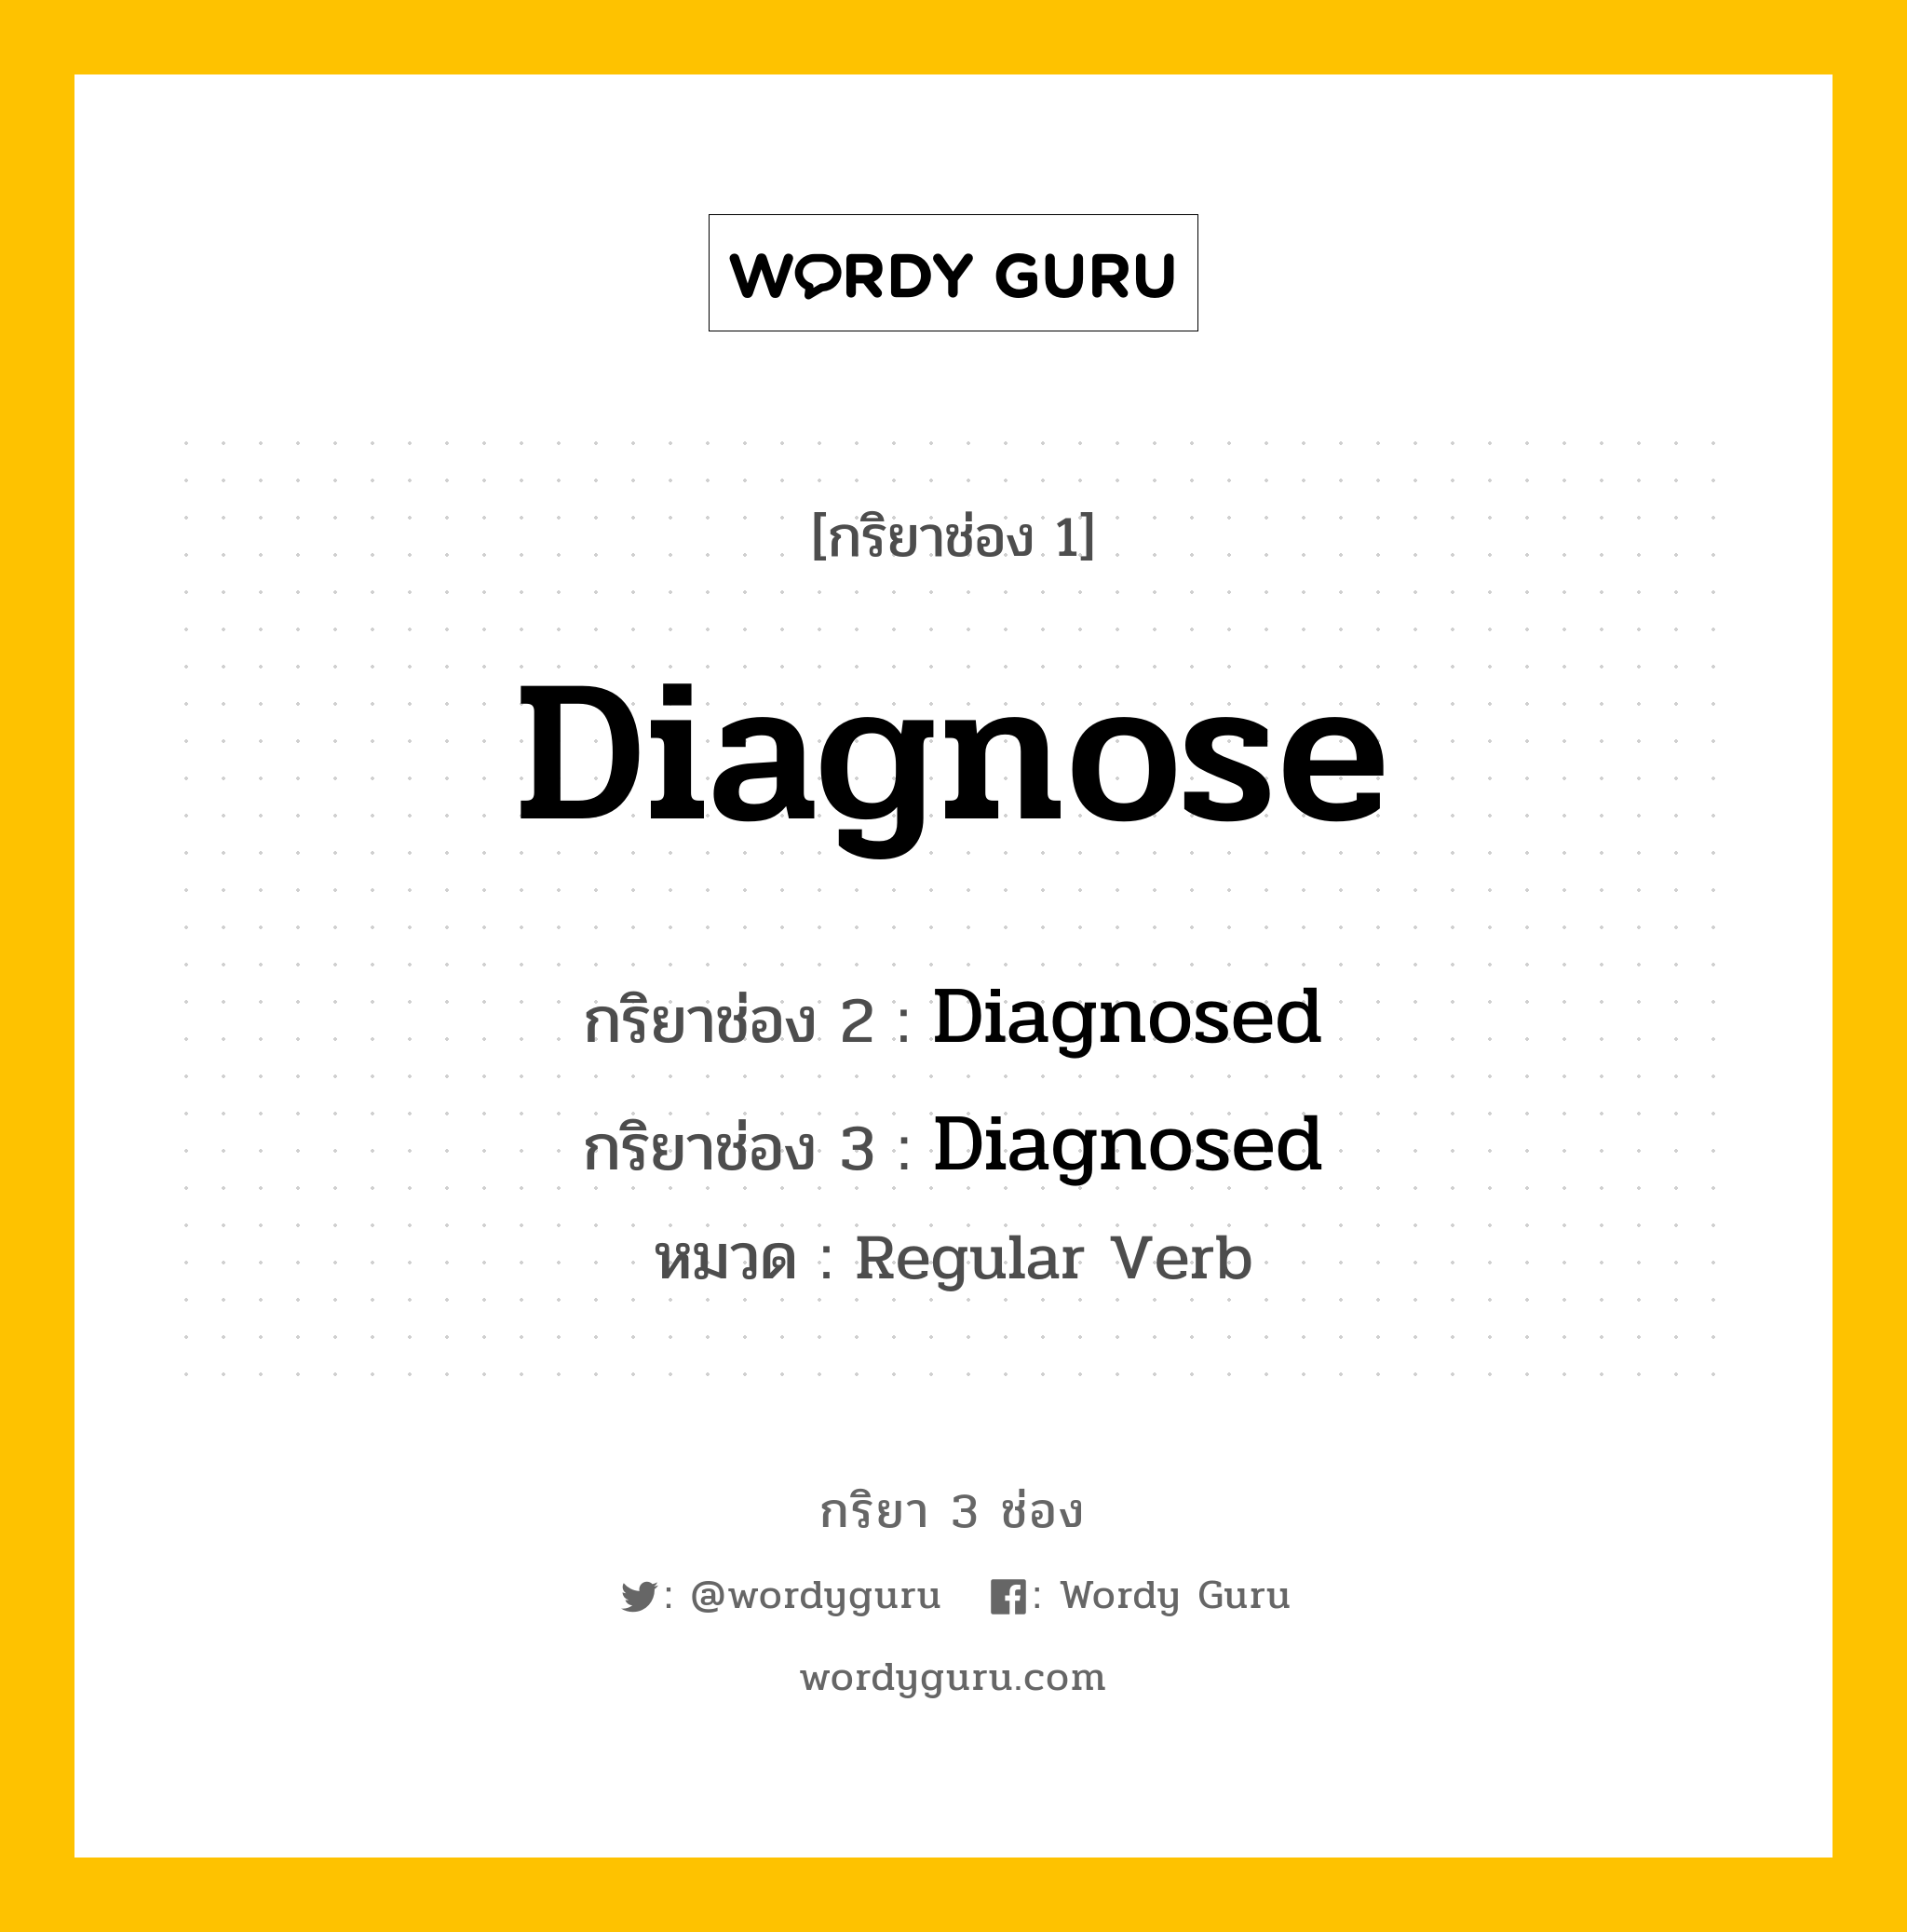 กริยา 3 ช่อง: Diagnose ช่อง 2 Diagnose ช่อง 3 คืออะไร, กริยาช่อง 1 Diagnose กริยาช่อง 2 Diagnosed กริยาช่อง 3 Diagnosed หมวด Regular Verb หมวด Regular Verb